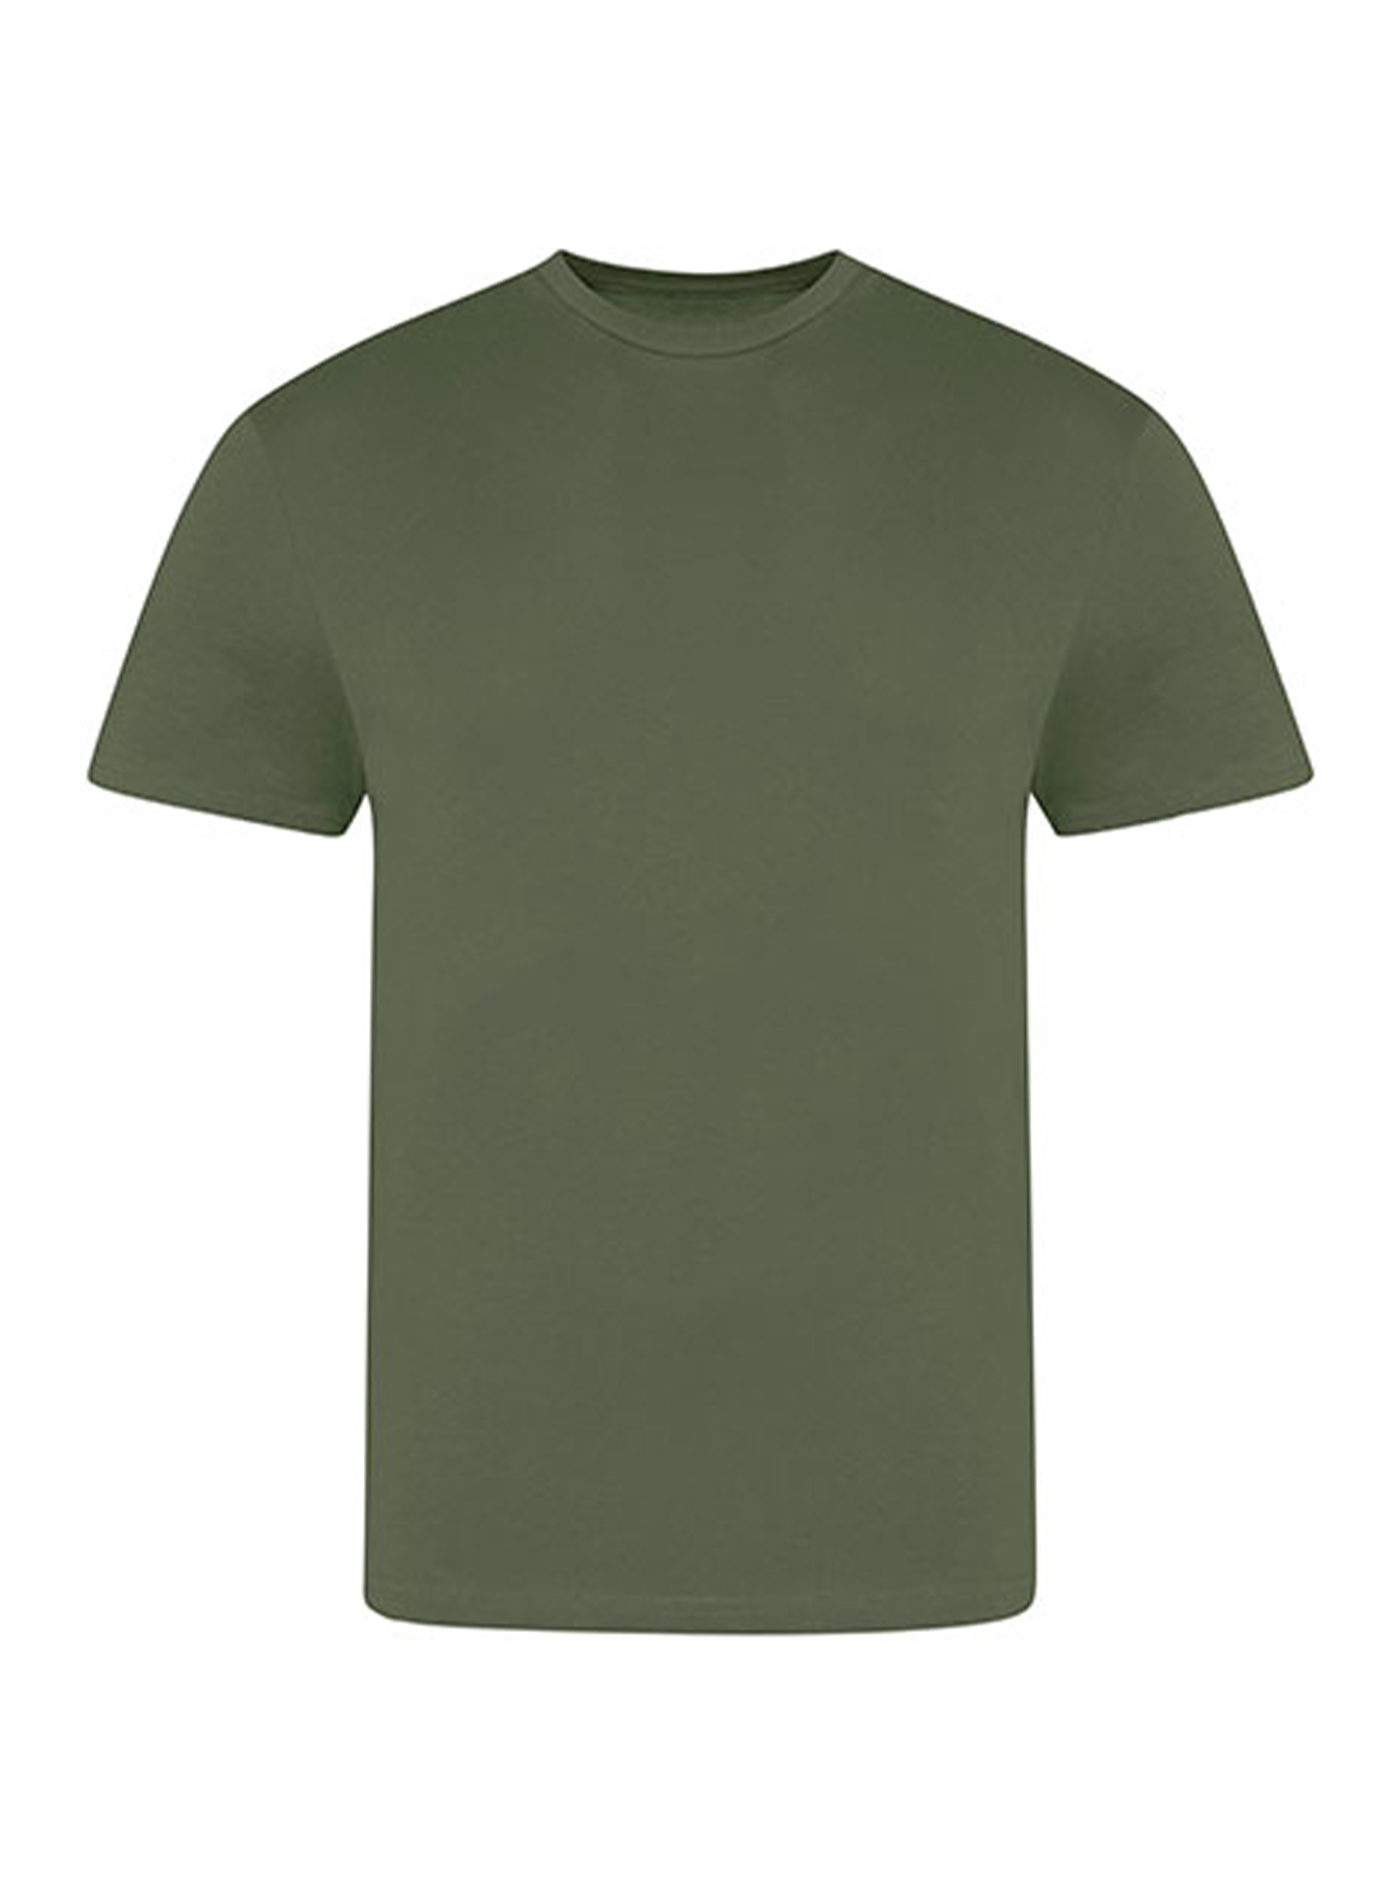 Pánské tričko Just Ts - Zemitá zelená XL